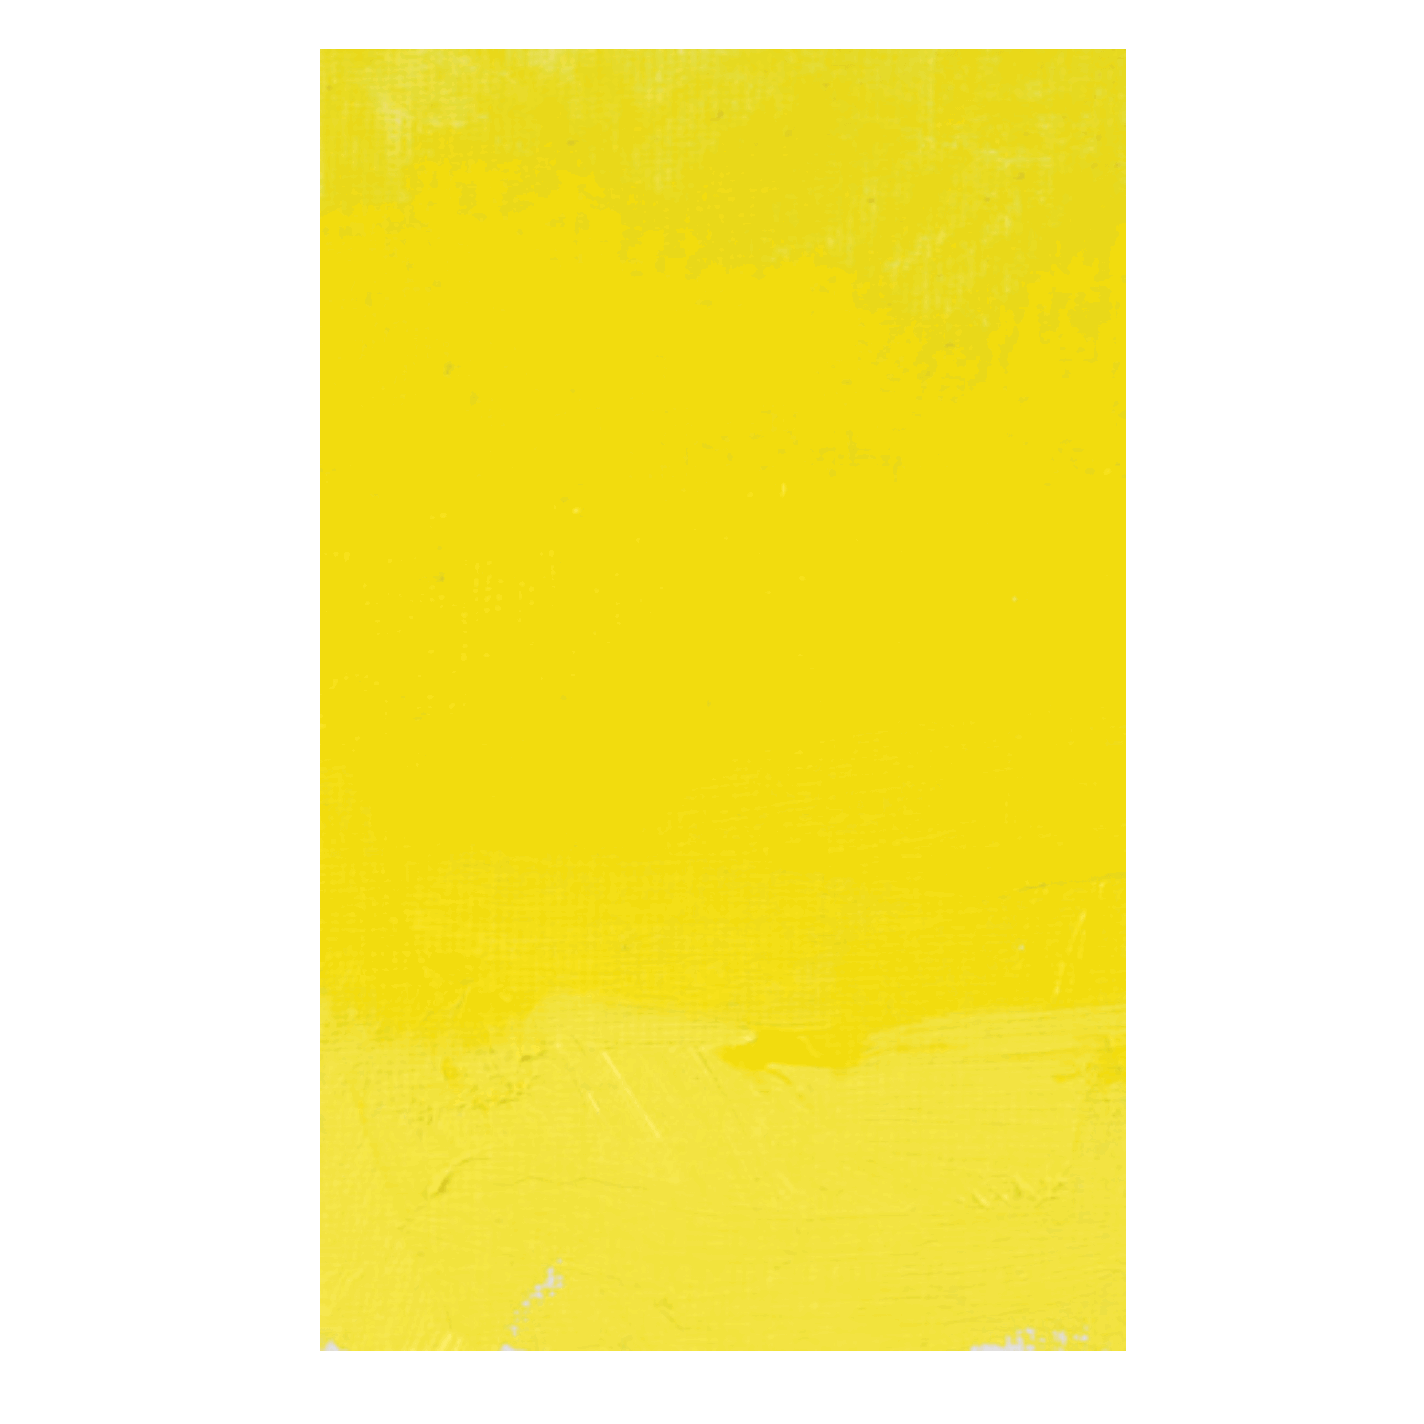 Williamsburg Oliemaling Bismuth Vanadate Yellow